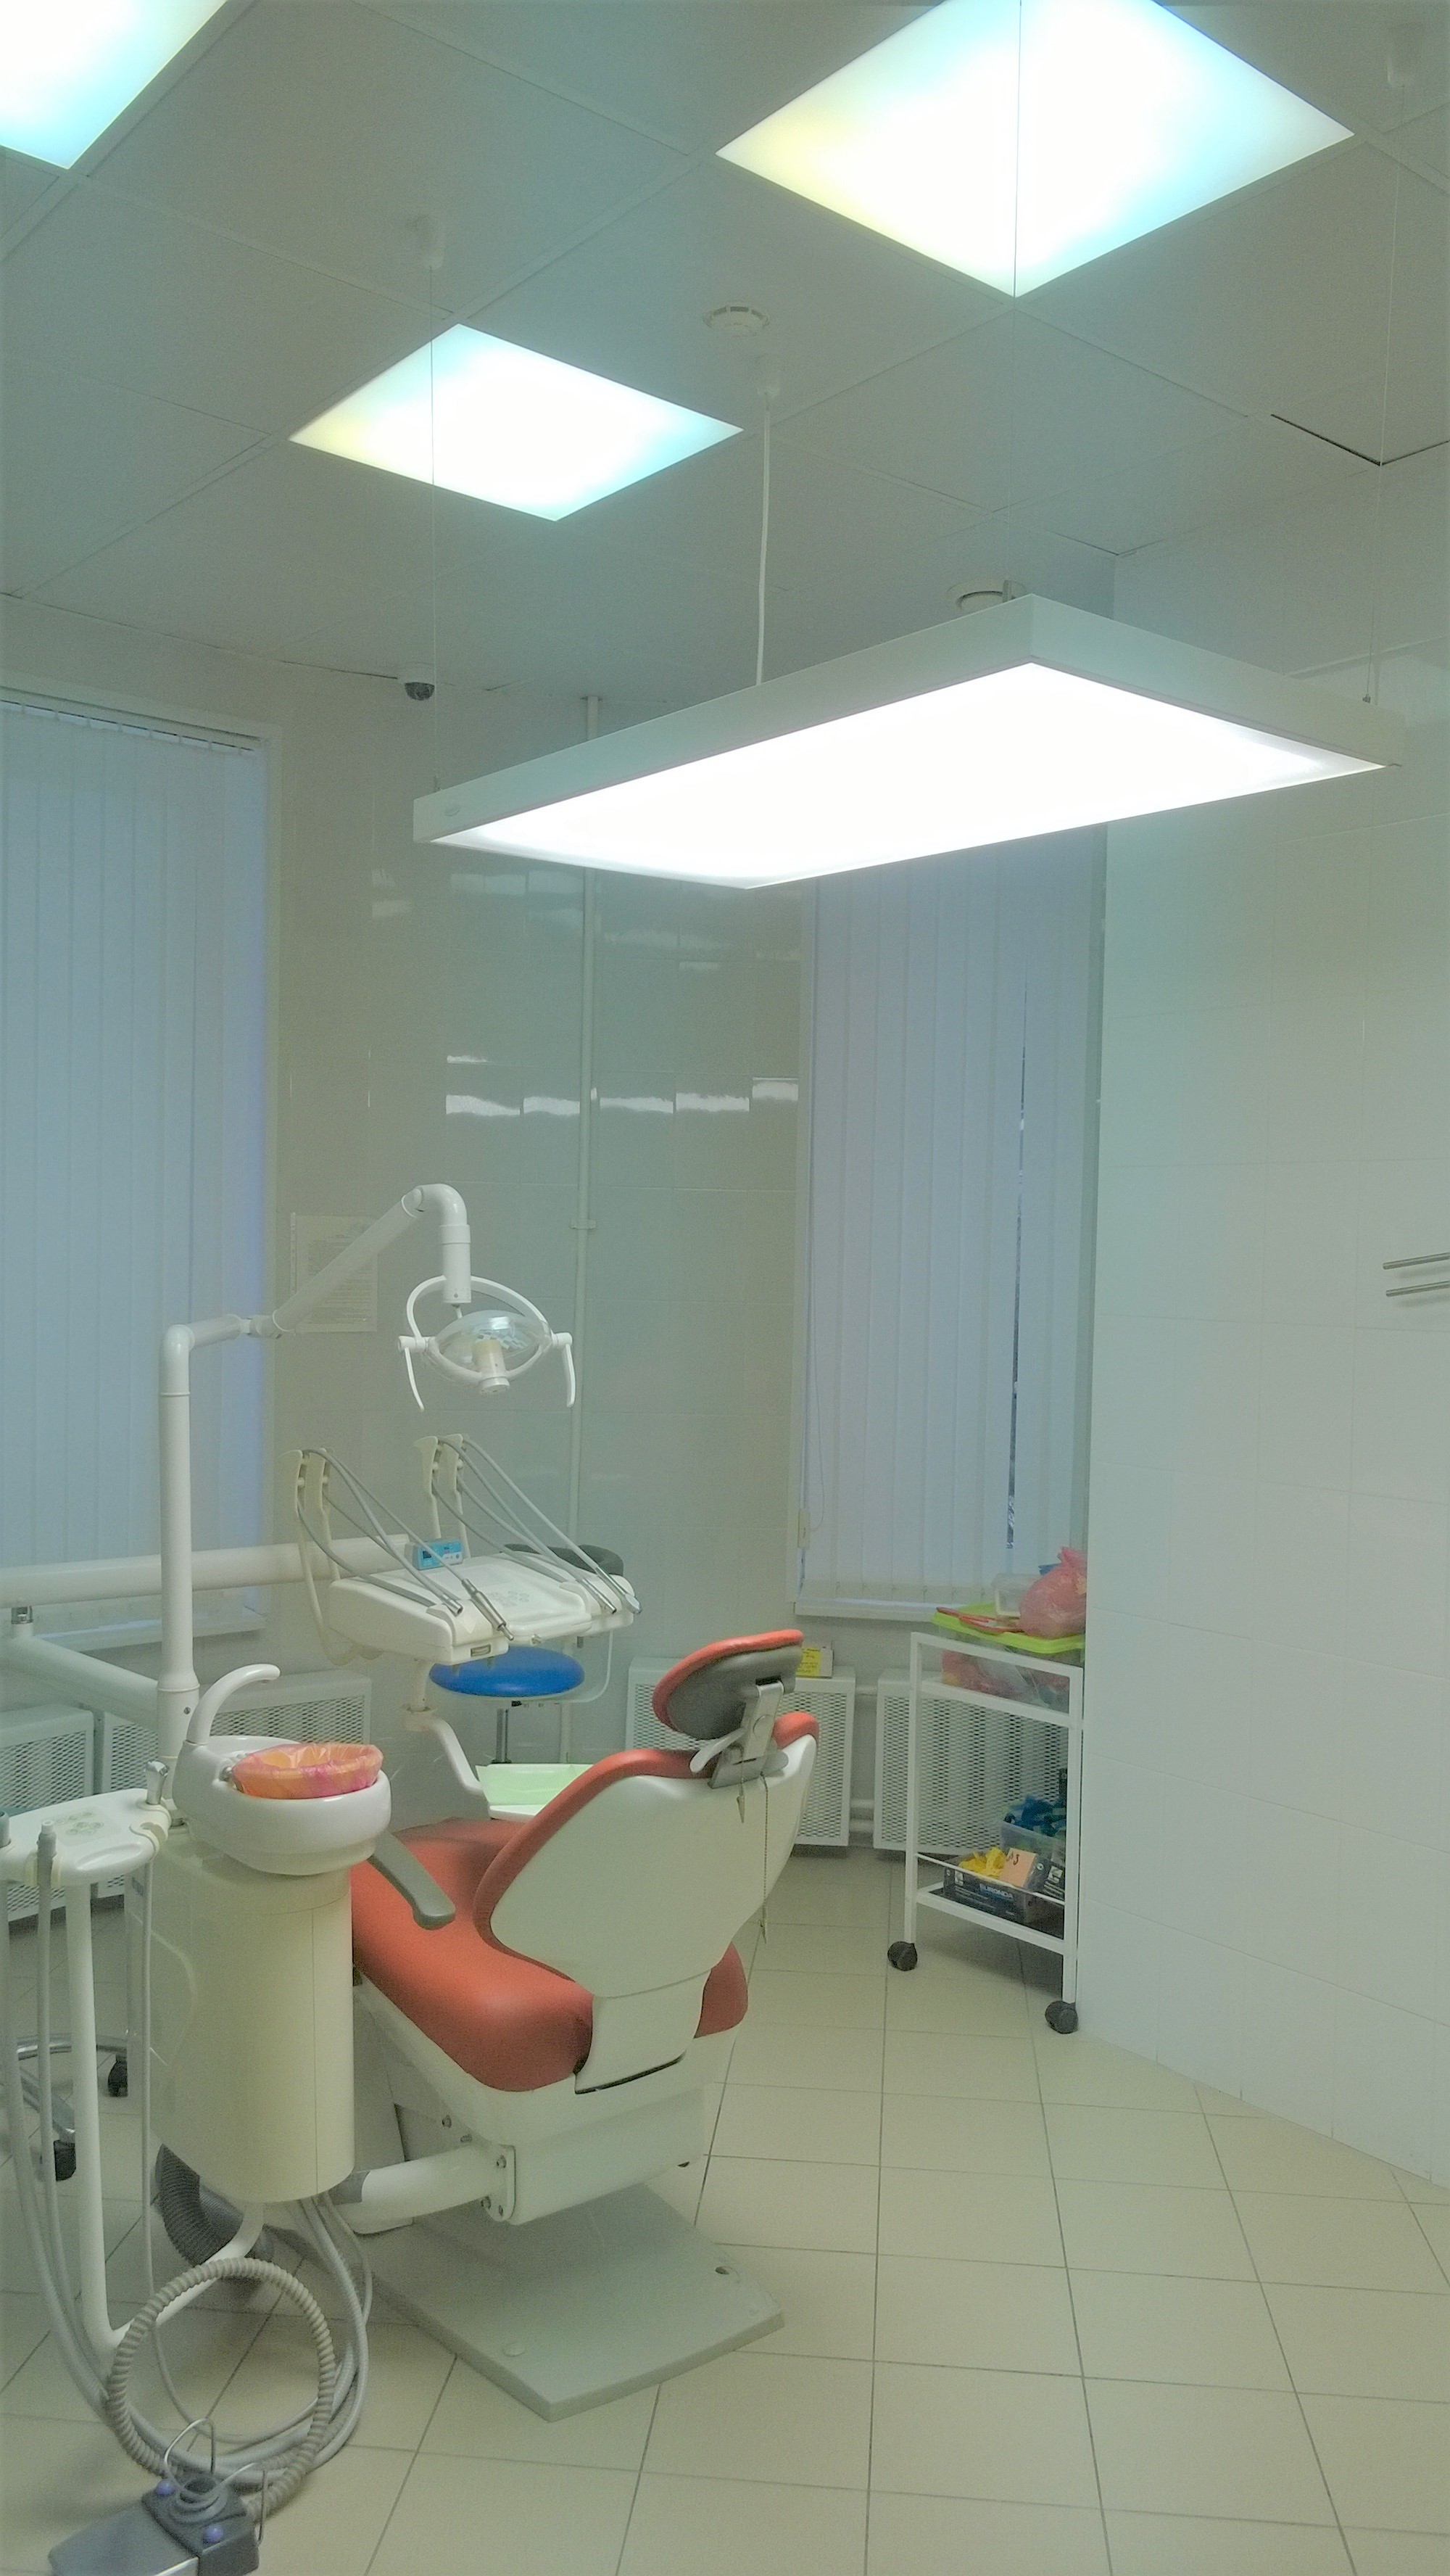 Нажмите на фото, чтобы увеличить , Бестеневой светильник для стоматологического кабинета.